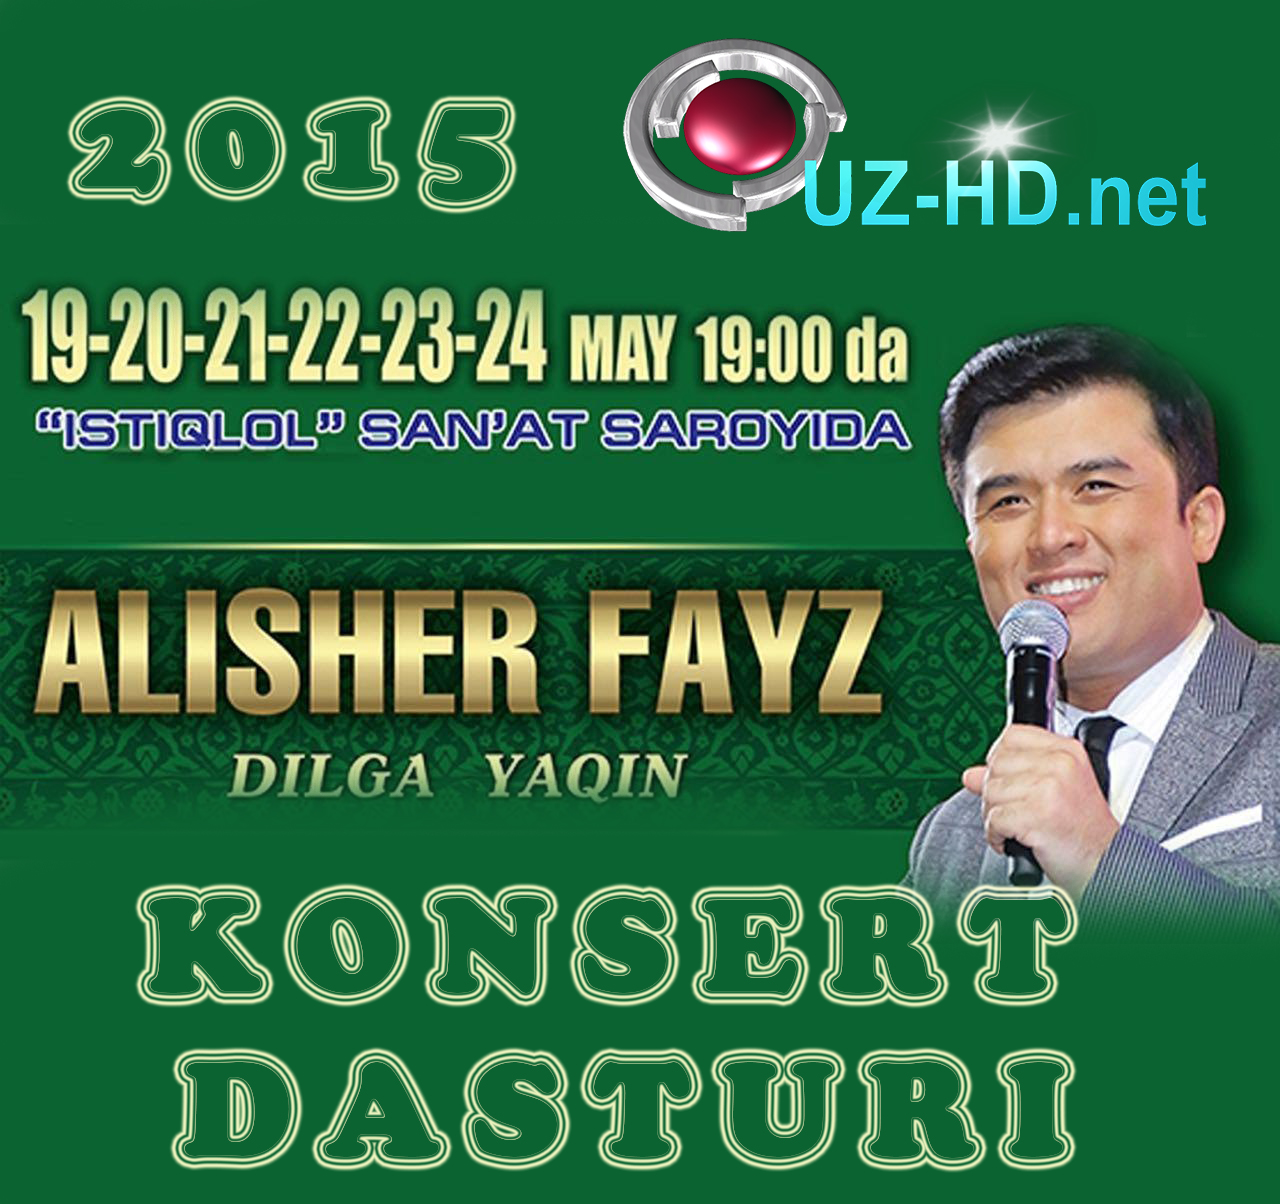 Alisher Fayz - Dilga yaqin nomli konsert dasturi 2015